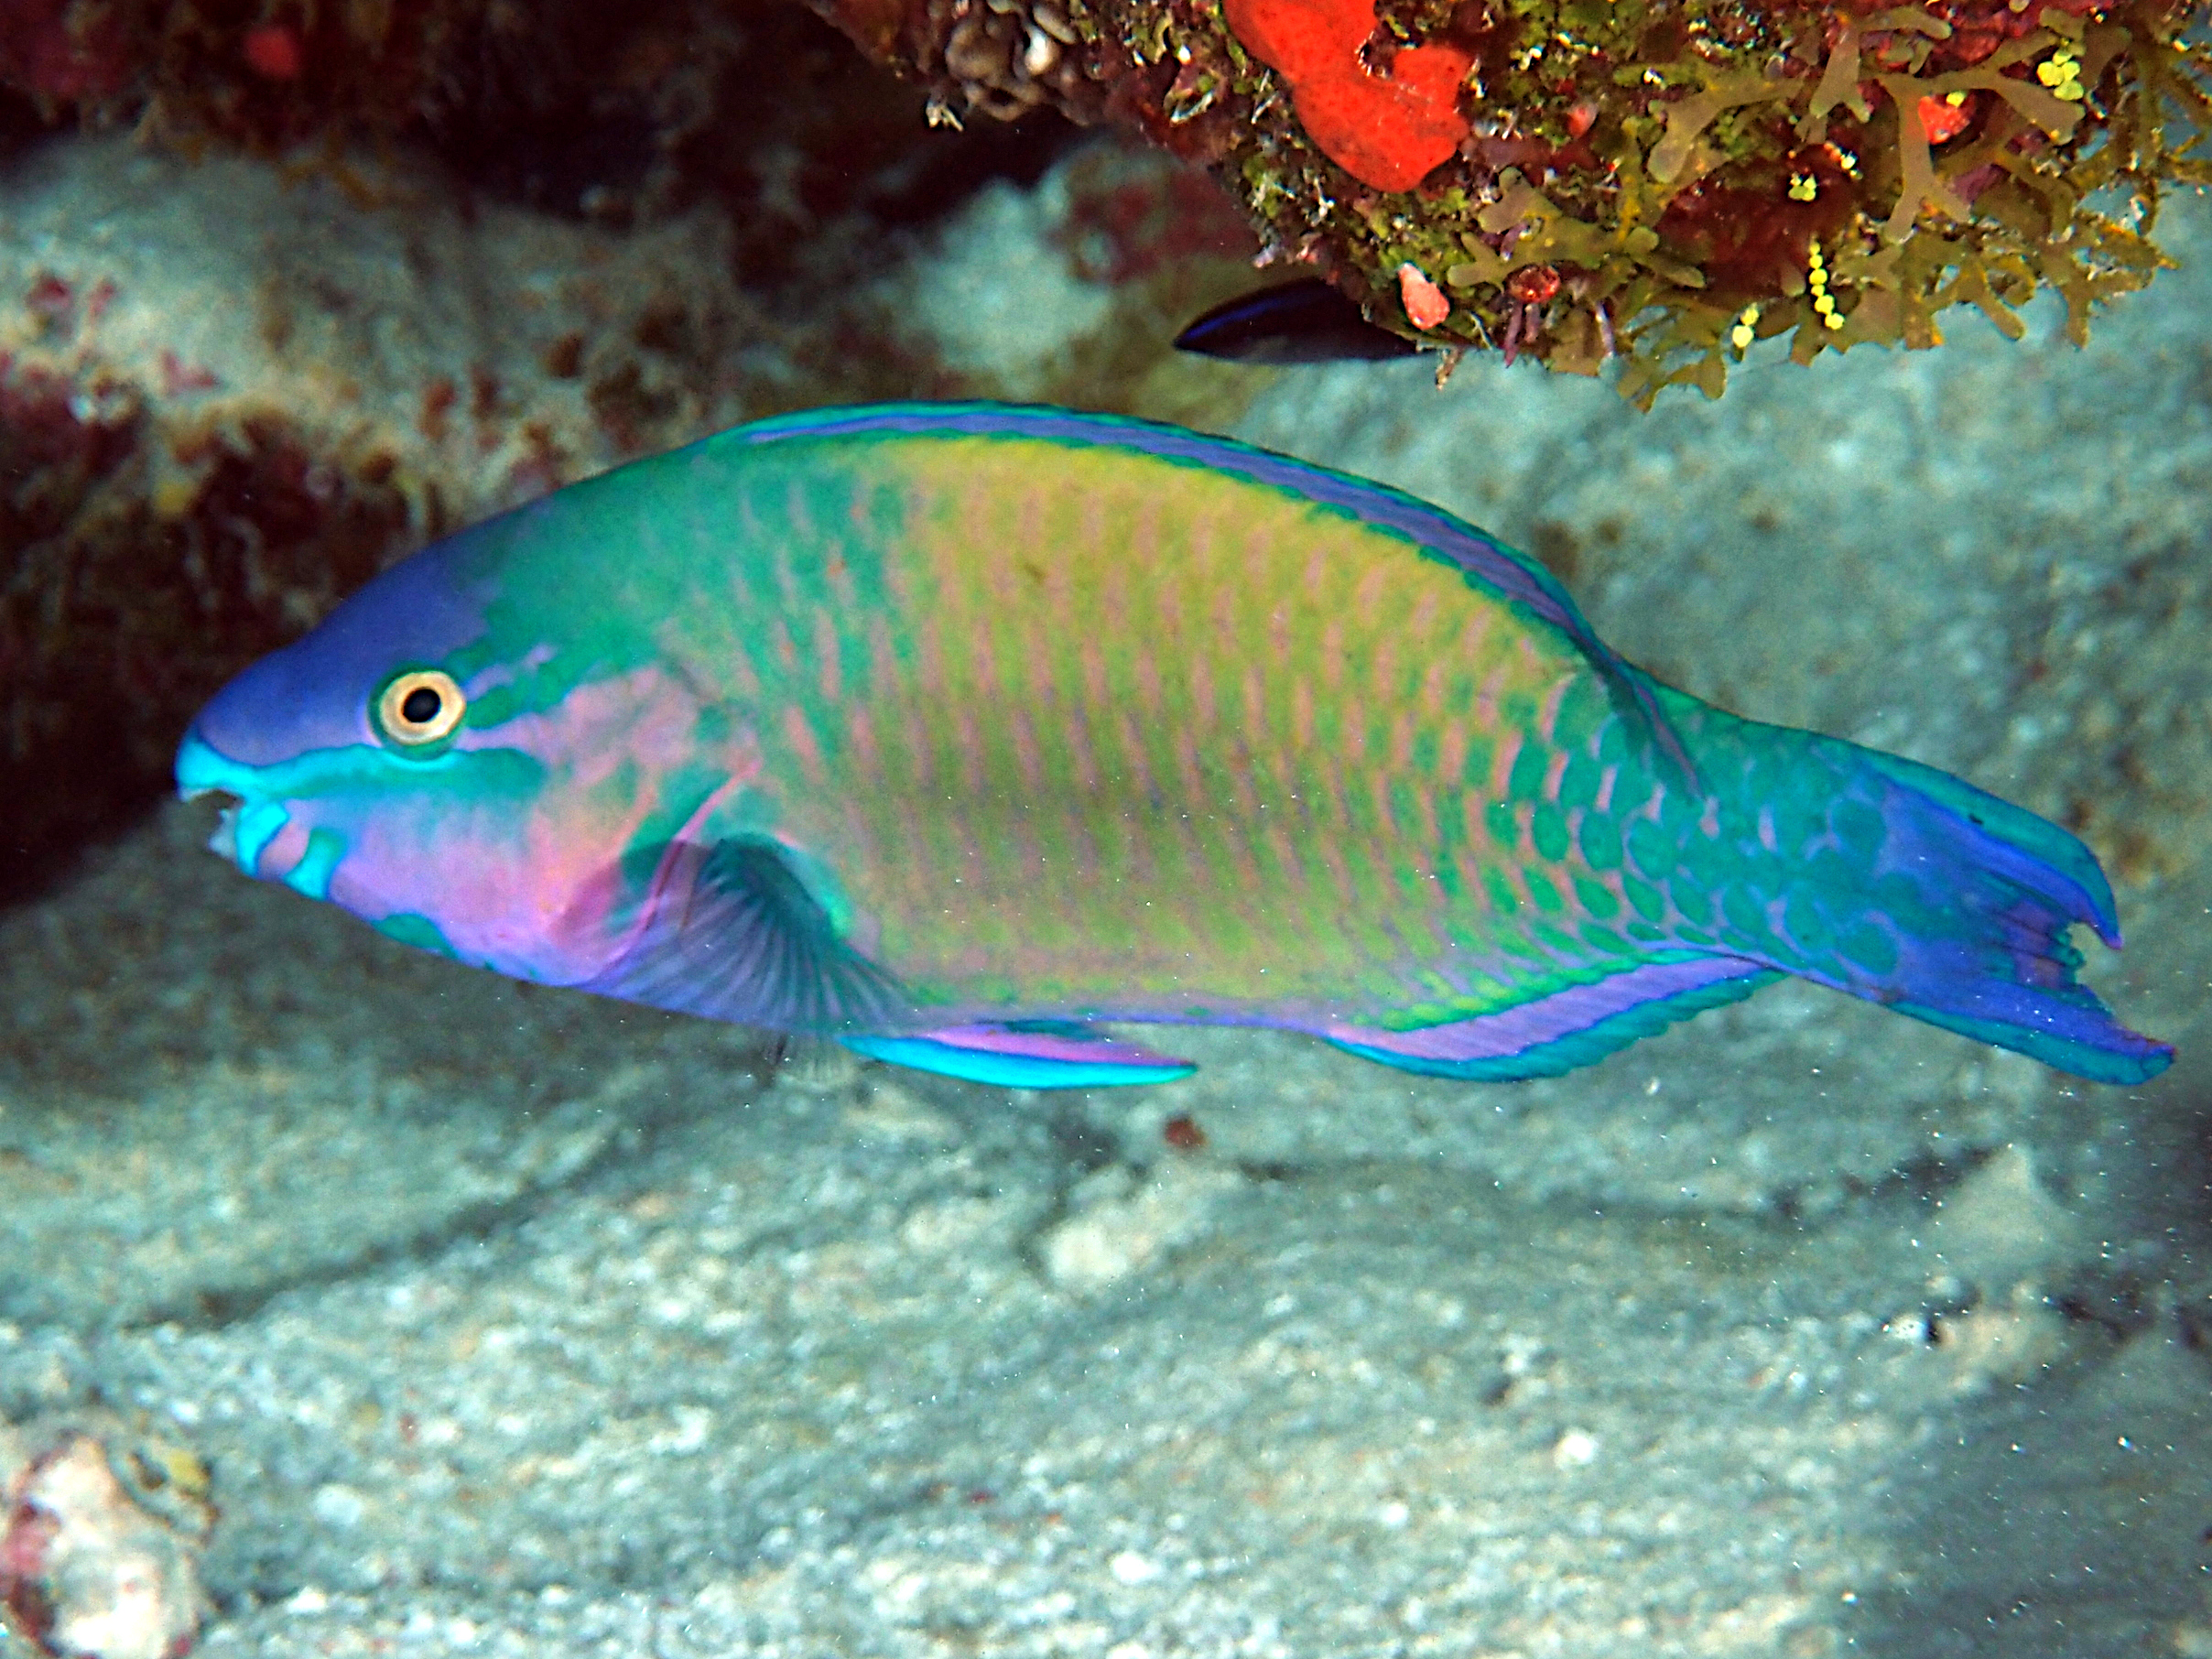 Palenose Parrotfish - Scarus psittacus